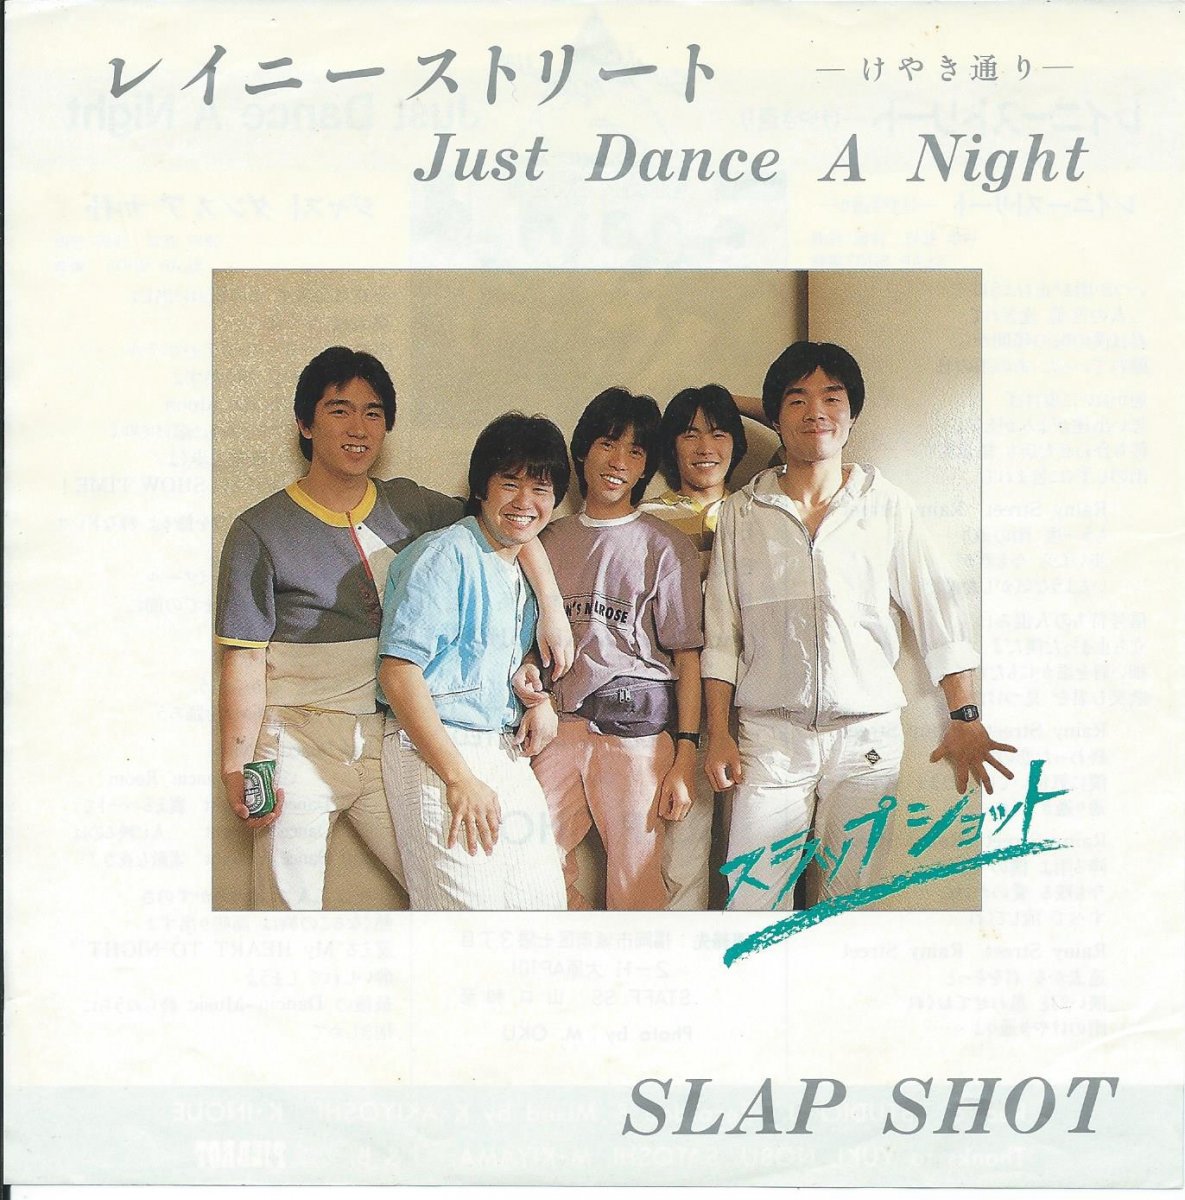 スラップ・ショット SLAP SHOT / レイニーストリート -けやき通り- RAINY STREET / ジャスト・ダンス・ア・ナイト JUST  DANCE A NIGHT (7) - HIP TANK RECORDS